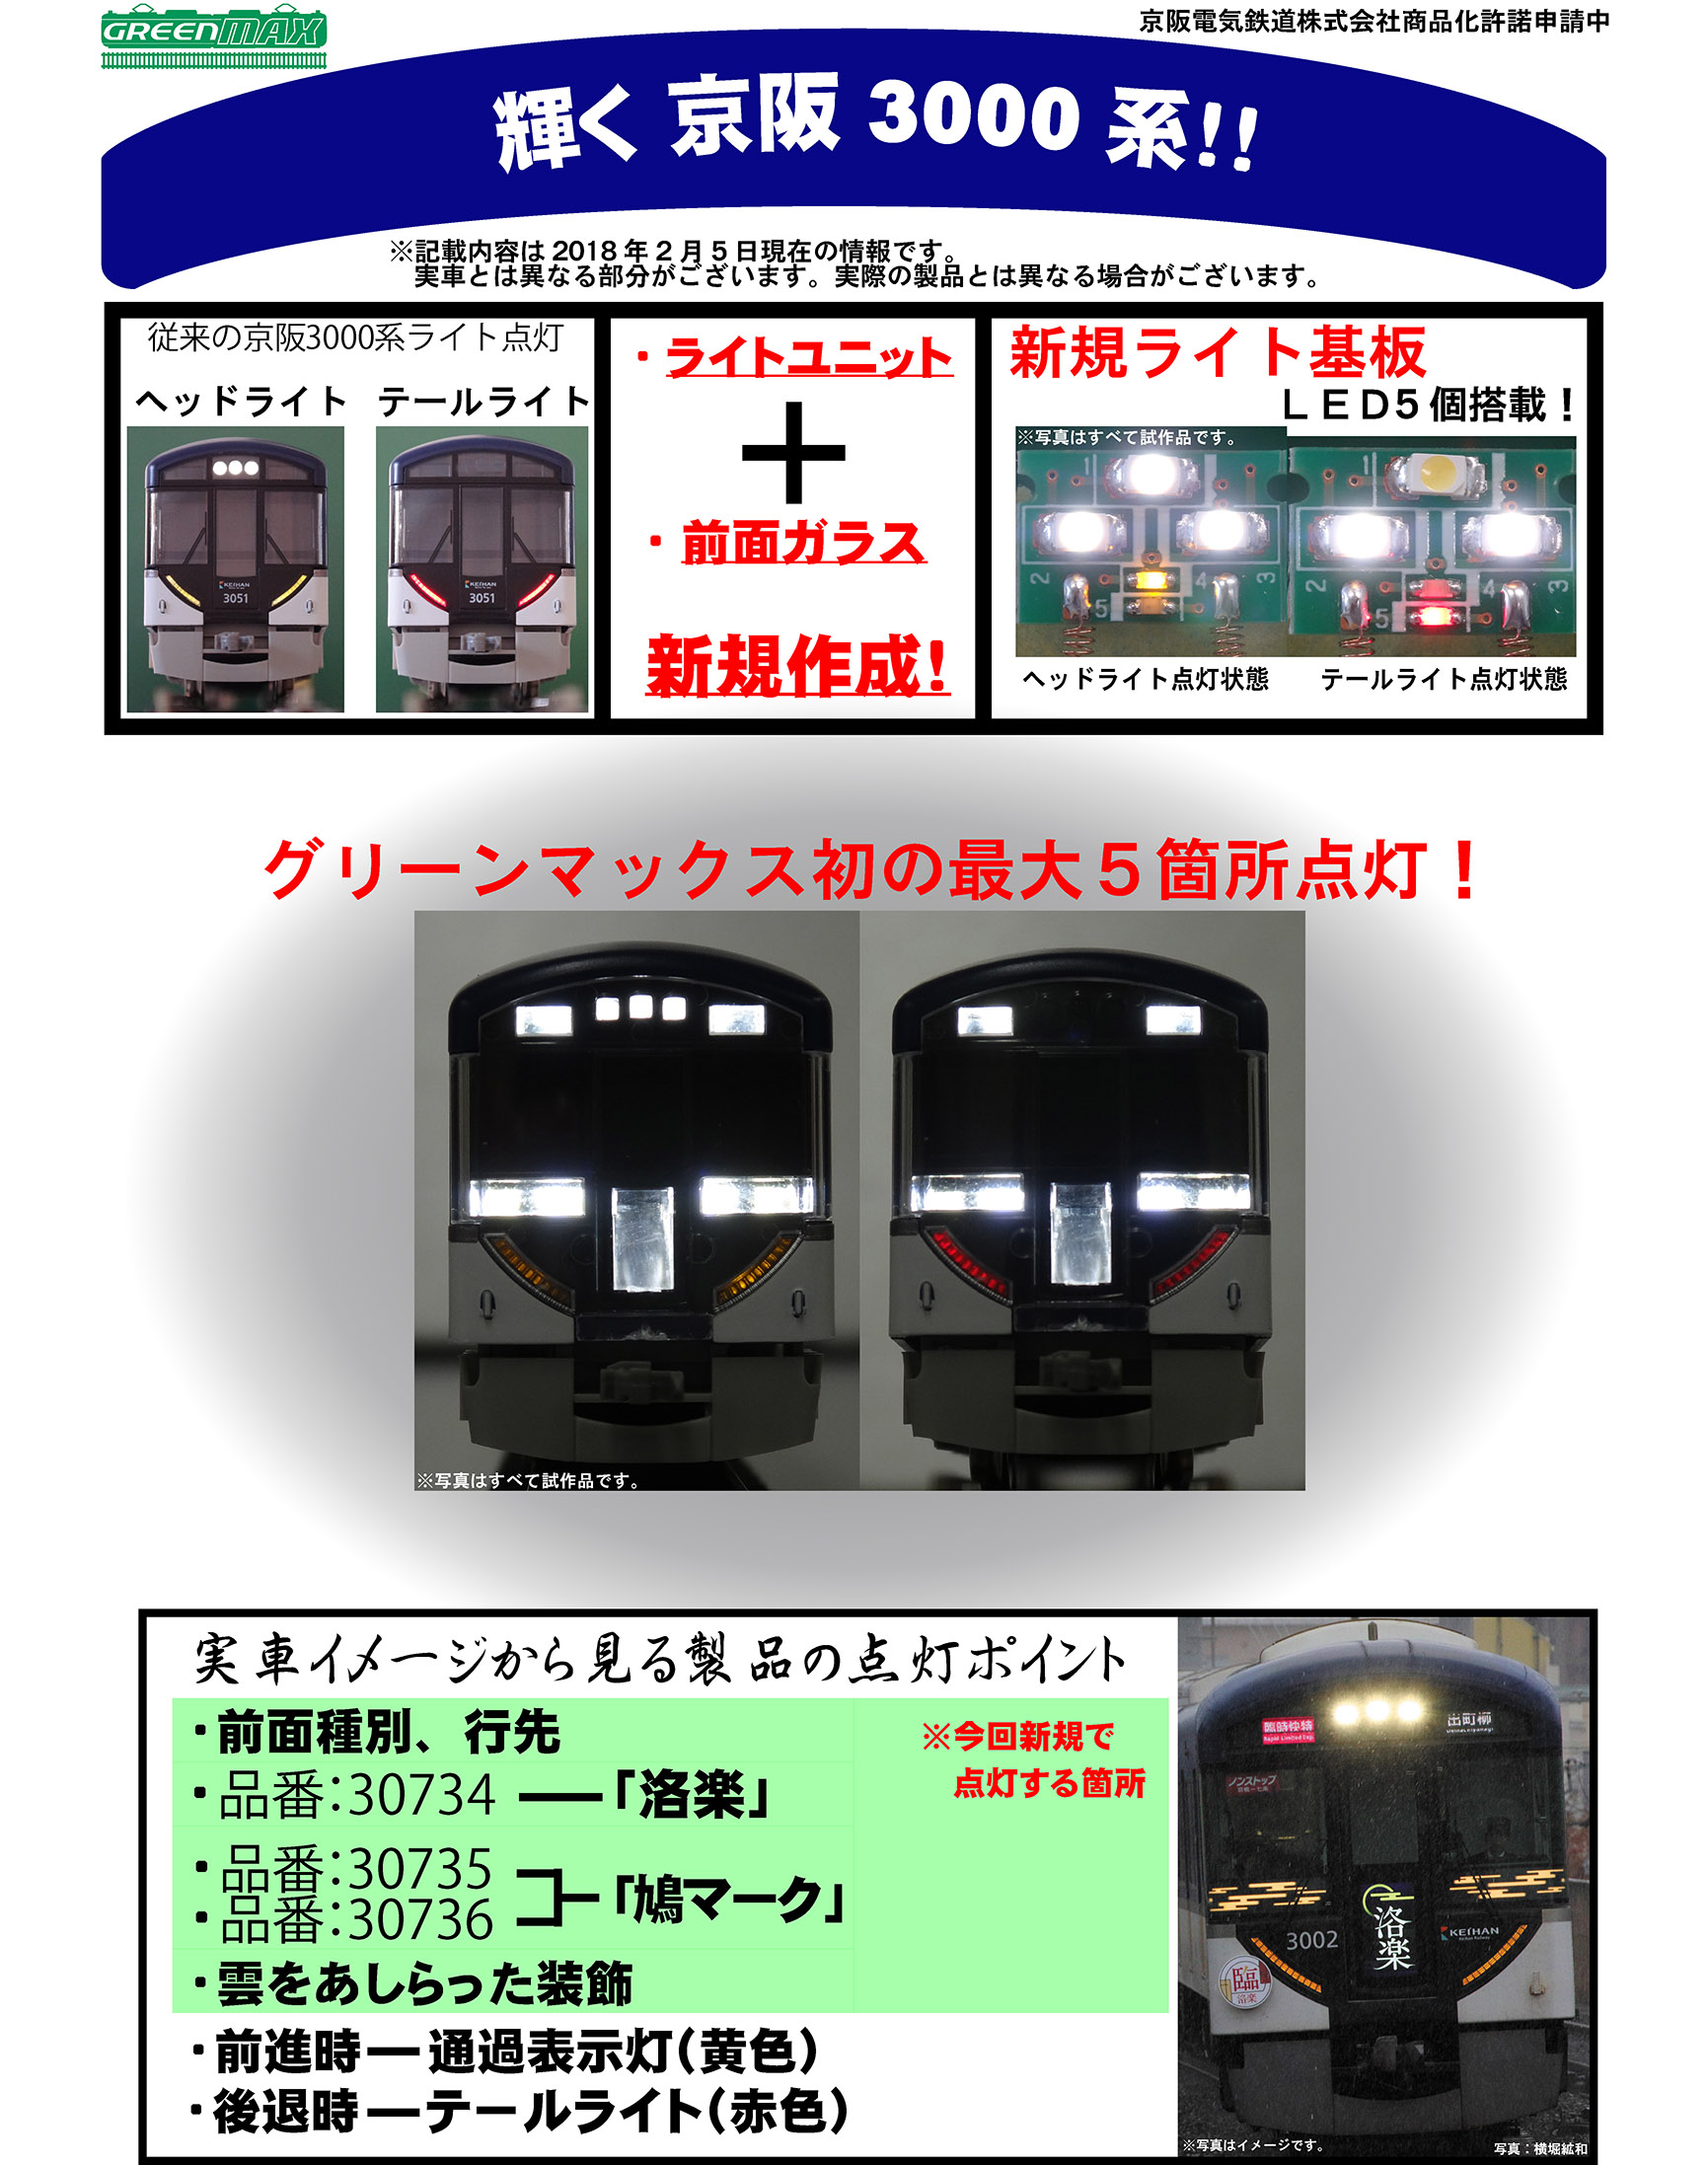 グリーンマックス 30736 京阪3000系「京阪特急」基本4両セット 鉄道 